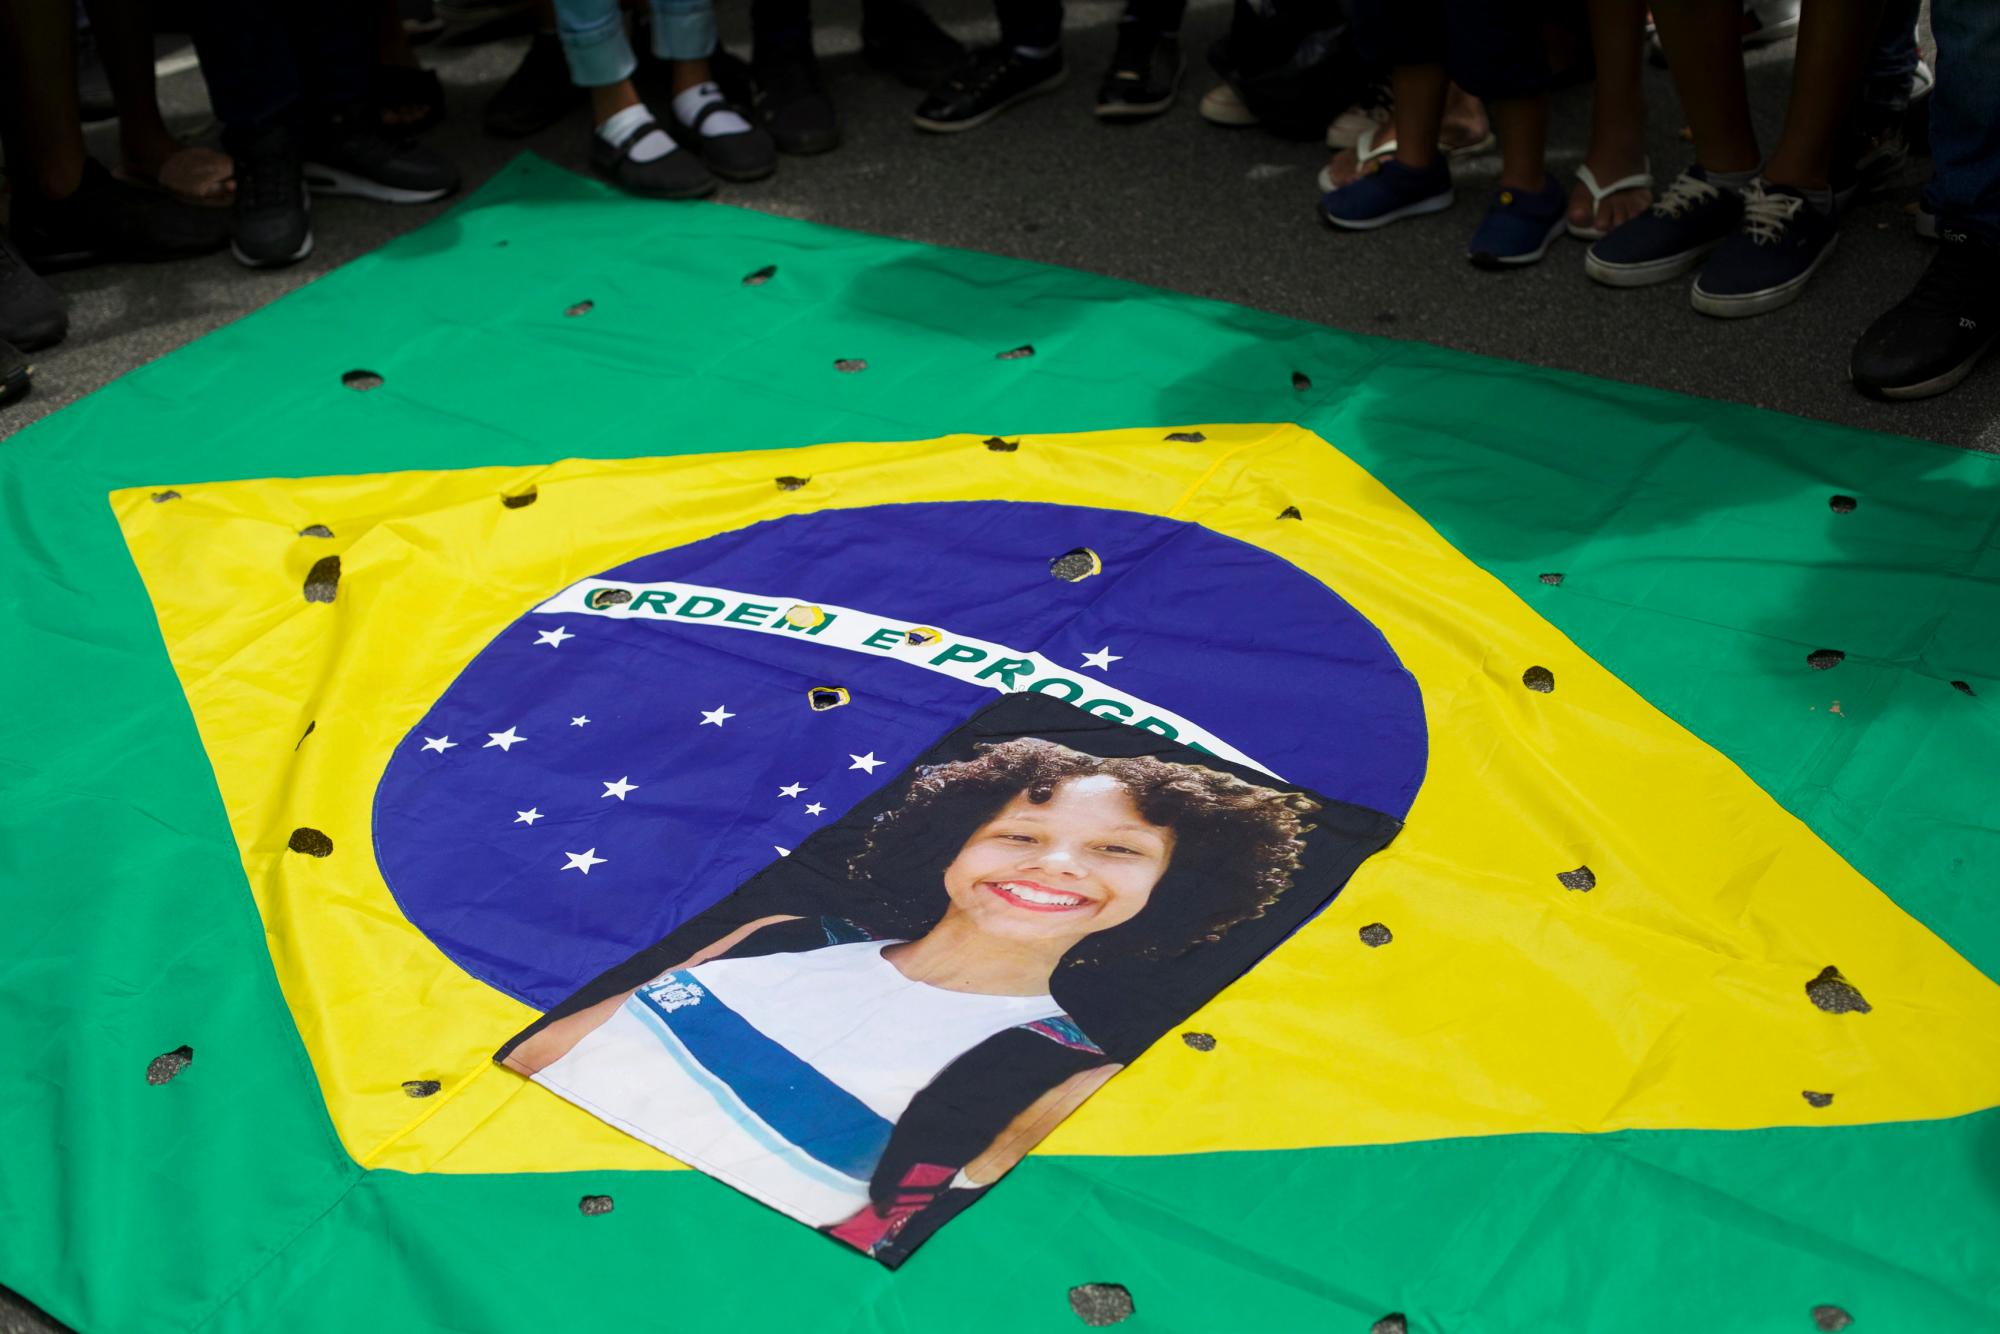 En imagen del miércoles 20 de marzo de 2019, una fotografía de la estudiante asesinada Maria Eduarda, que murió baleada durante un tiroteo en la escuela, es colocada sobre una bandera brasileña con orificios que simbolizan orificios de bala, durante una protesta organizada por la ONG Río de Paz afuera del Palacio de Guanabara, la oficina gubernamental del estado de Río de Janeiro, en Río de Janeiro, Brasil.